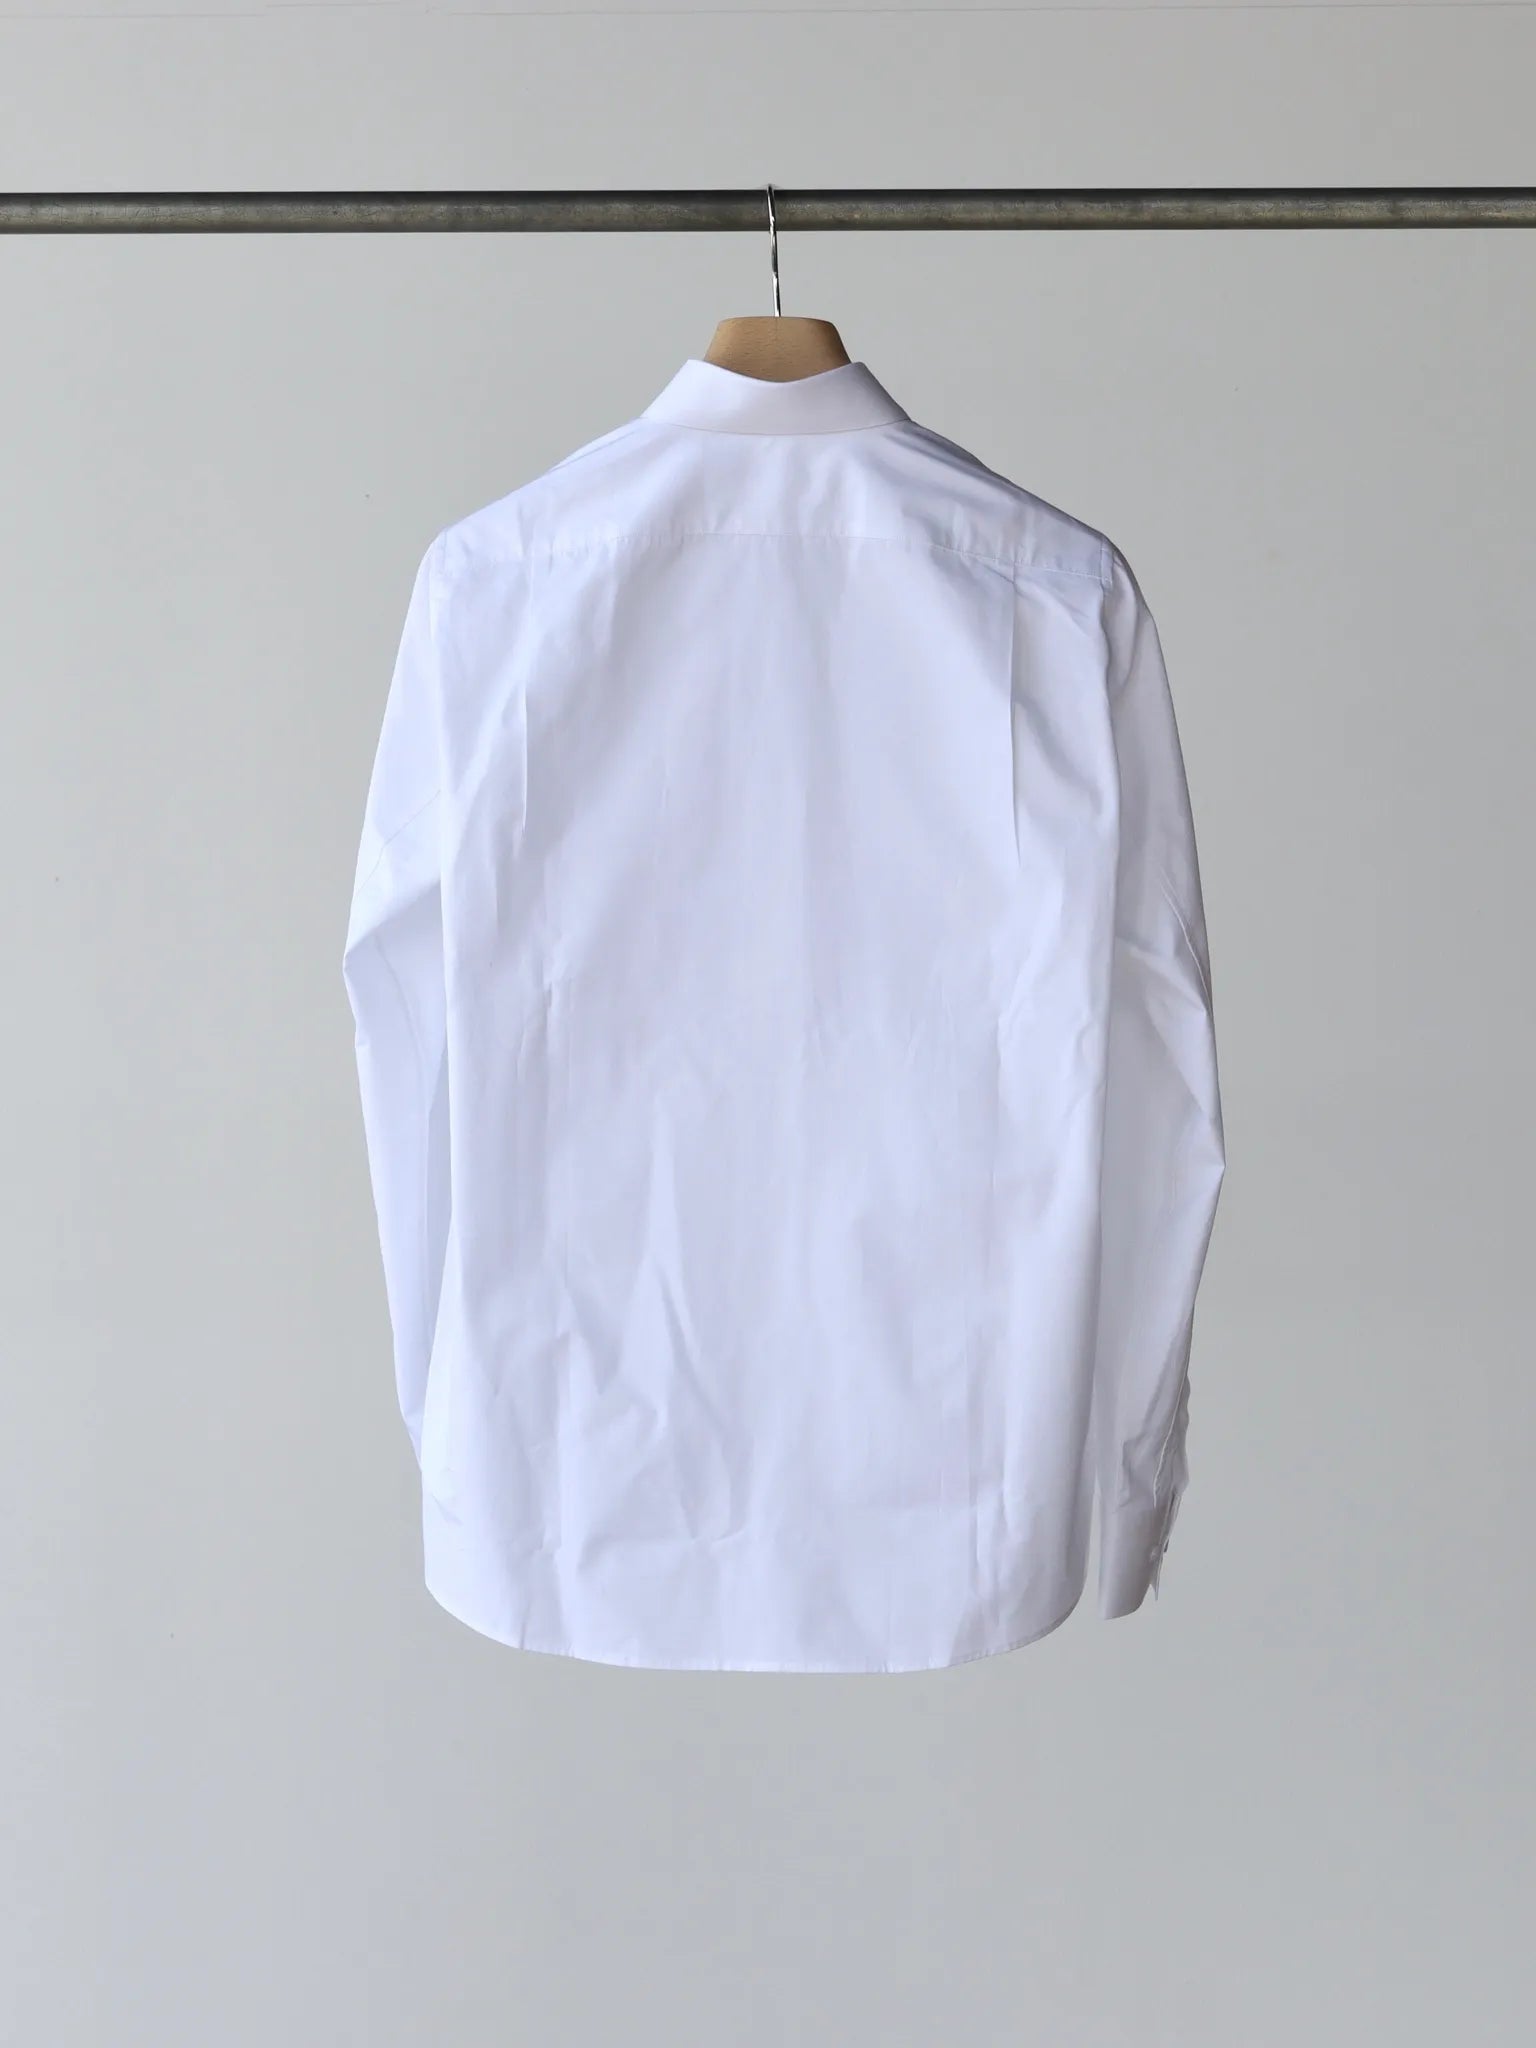 sean-suen-shirt-white-2